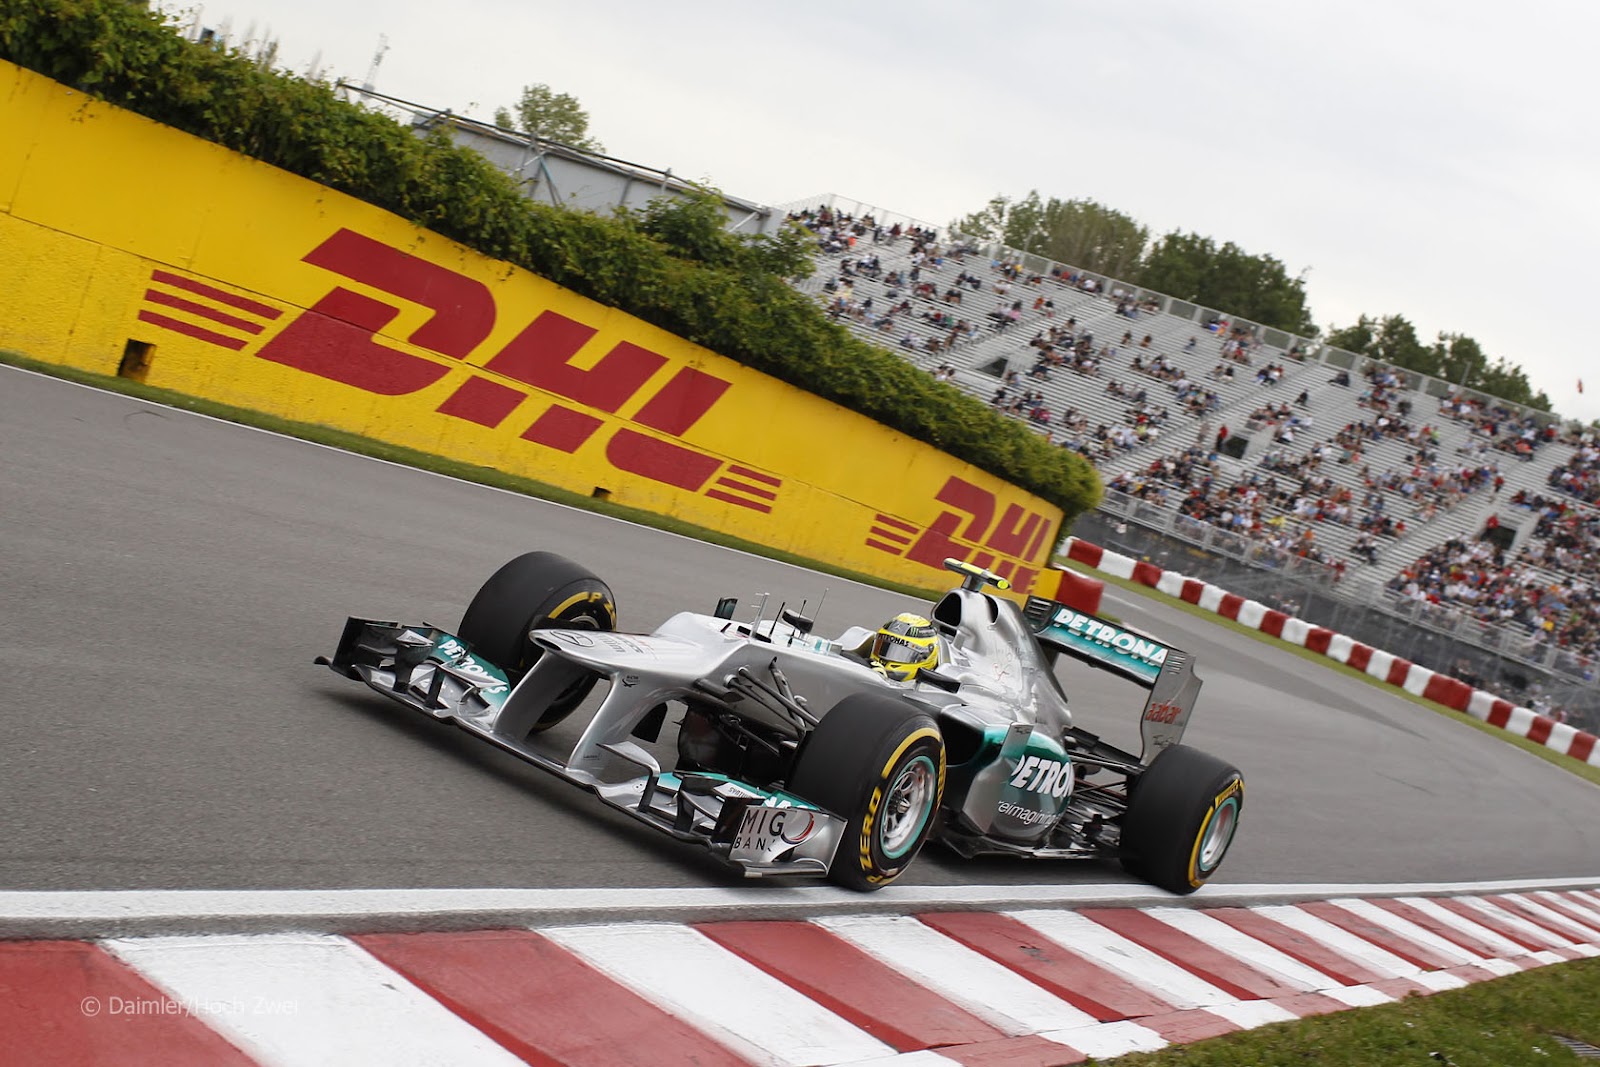 http://3.bp.blogspot.com/-jE0PTGB6scs/UBM_g6eIU6I/AAAAAAAAB5Q/w5WljZyT6K4/s1600/Mercedes+Rosberg+Canada+2012-1.jpg